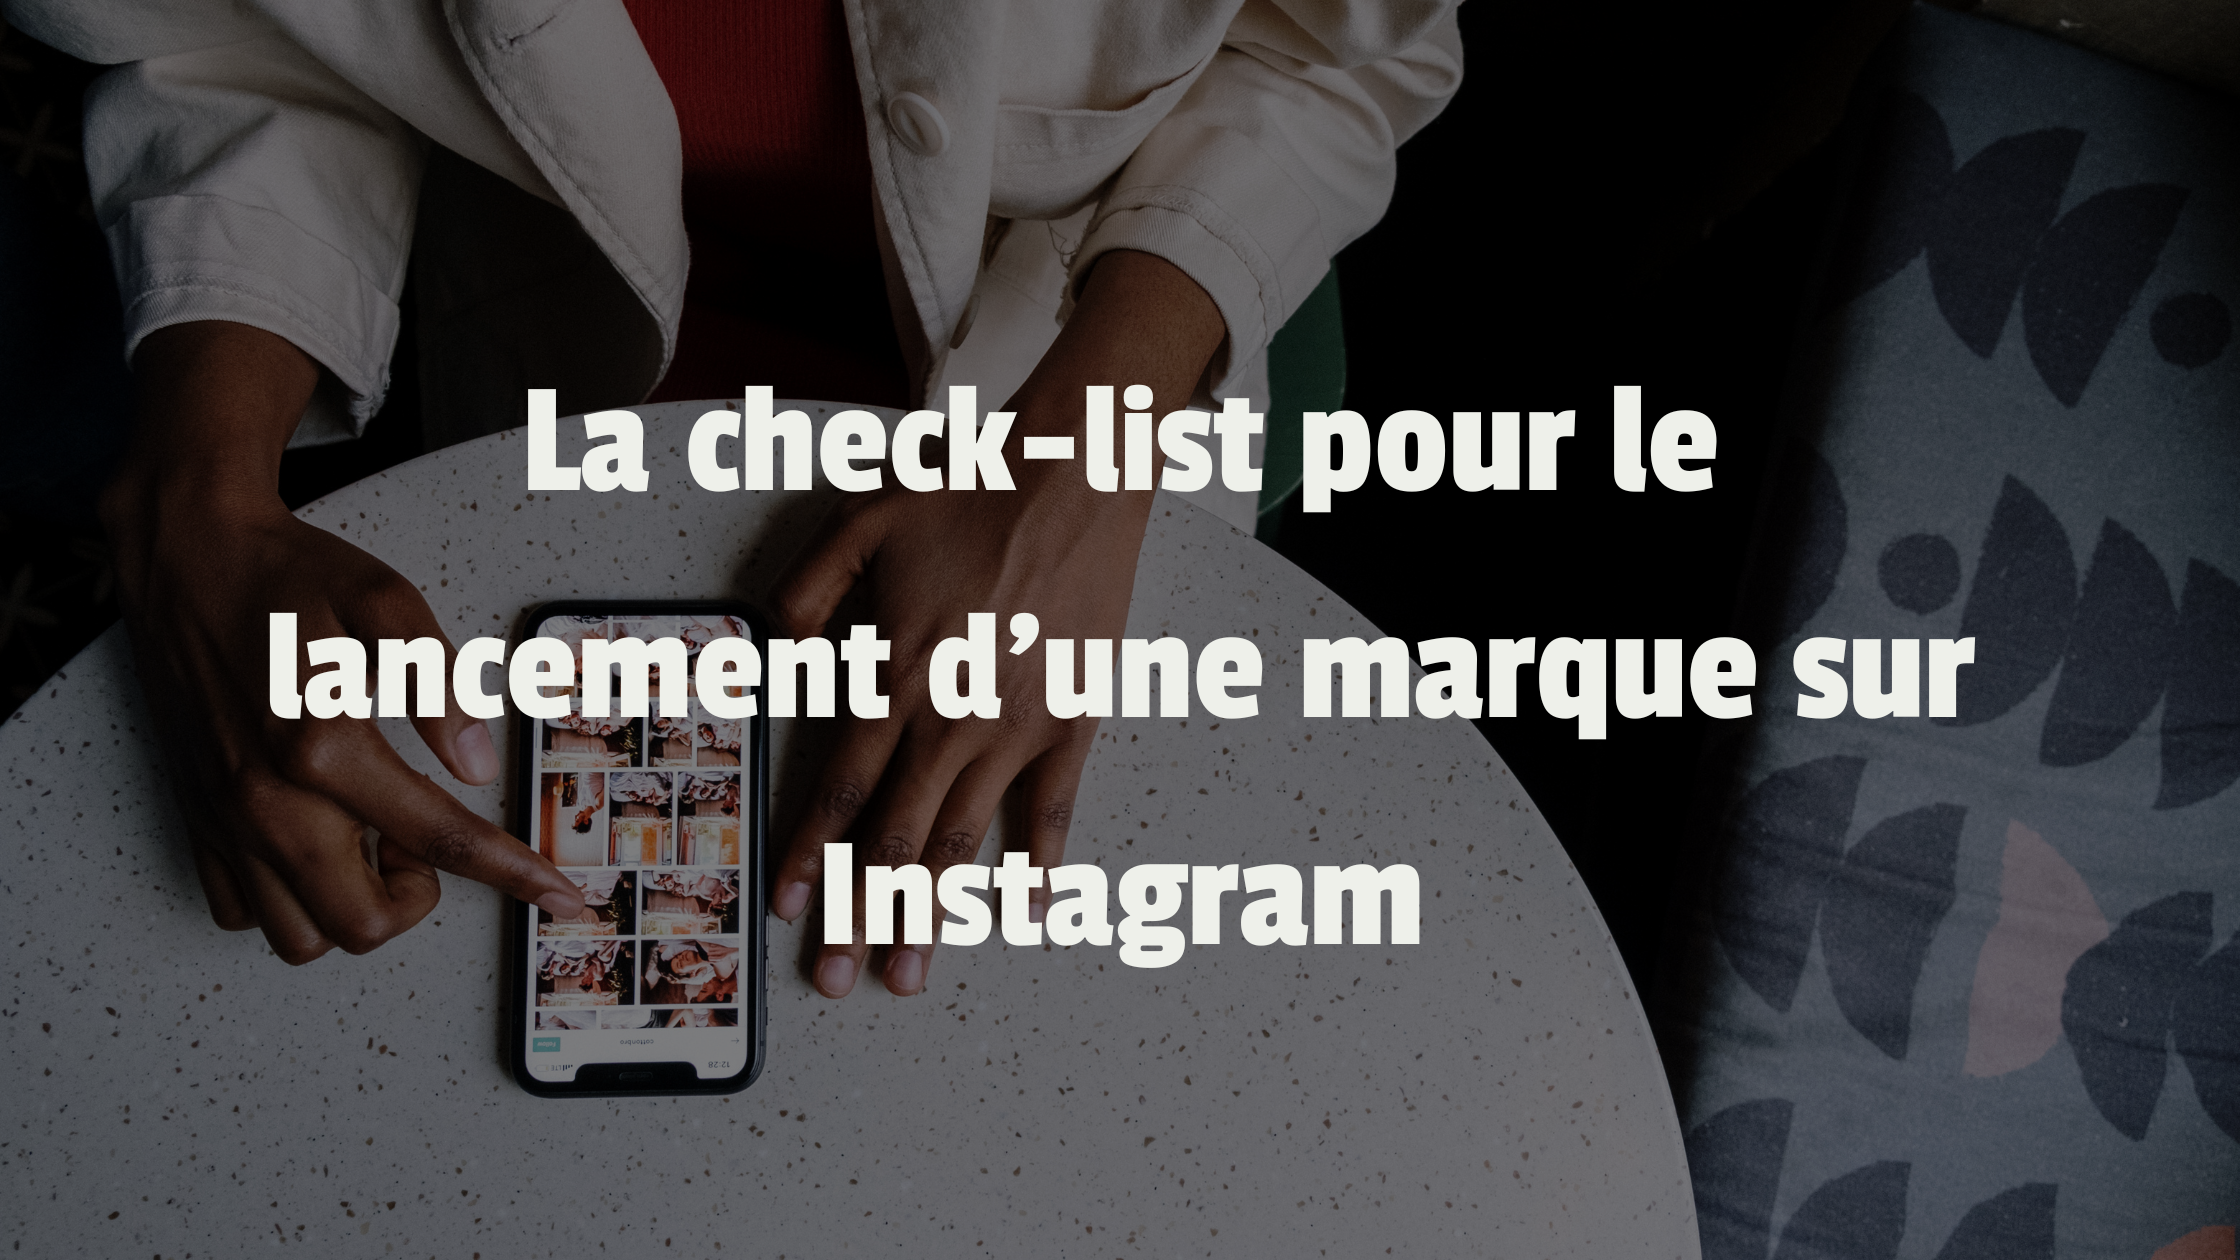 La check-list pour le lancement d'une marque sur Instagram